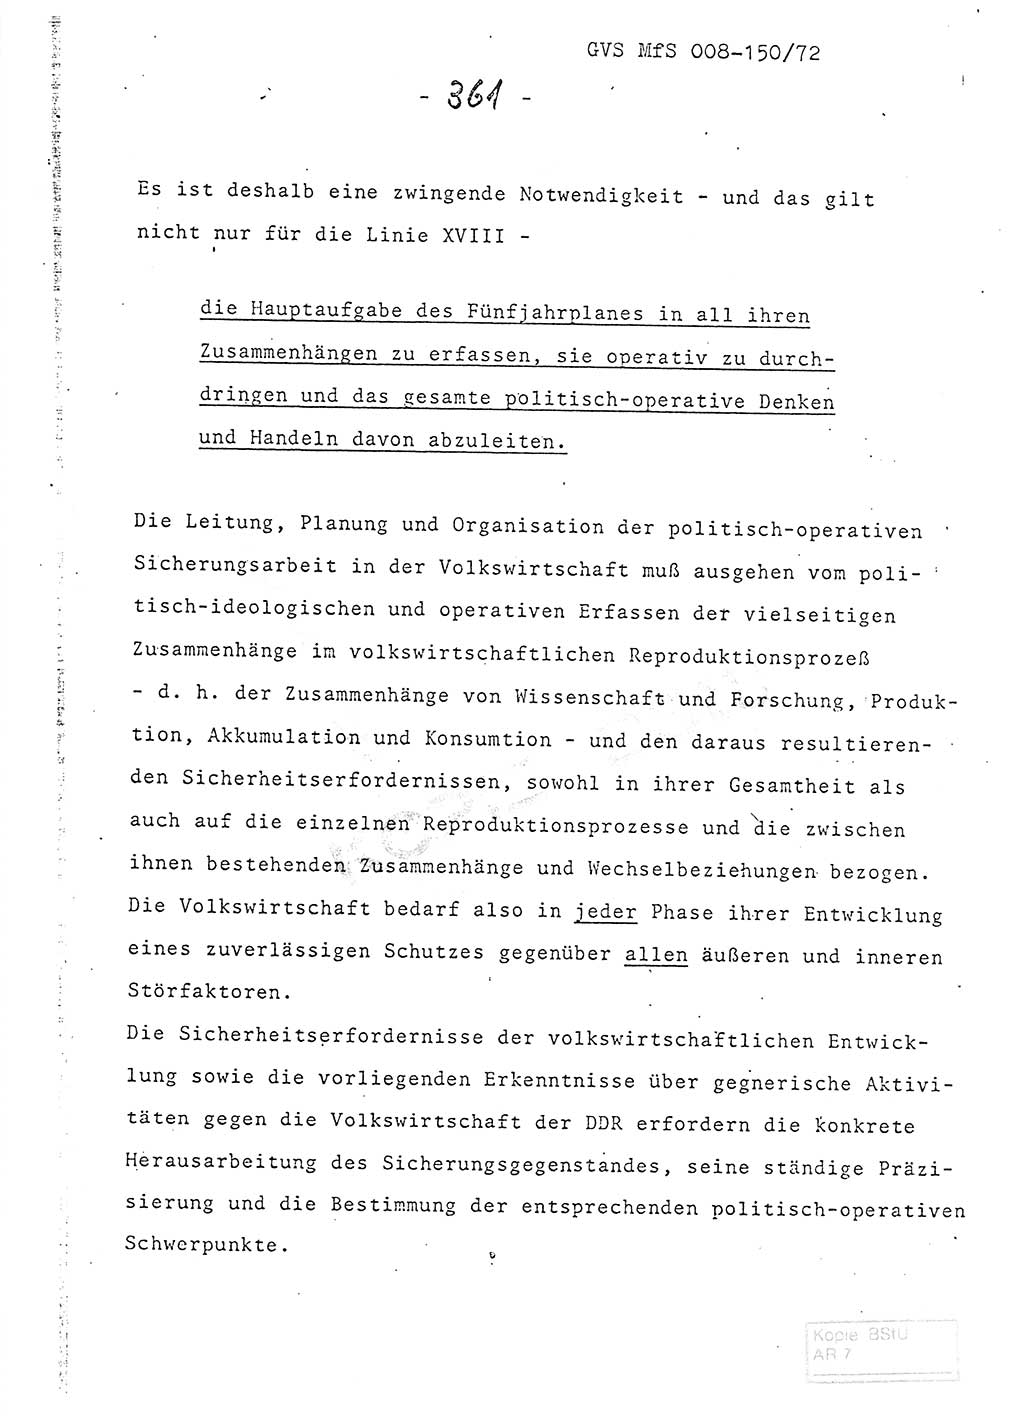 Referat (Entwurf) des Genossen Minister (Generaloberst Erich Mielke) auf der Dienstkonferenz 1972, Ministerium für Staatssicherheit (MfS) [Deutsche Demokratische Republik (DDR)], Der Minister, Geheime Verschlußsache (GVS) 008-150/72, Berlin 25.2.1972, Seite 361 (Ref. Entw. DK MfS DDR Min. GVS 008-150/72 1972, S. 361)